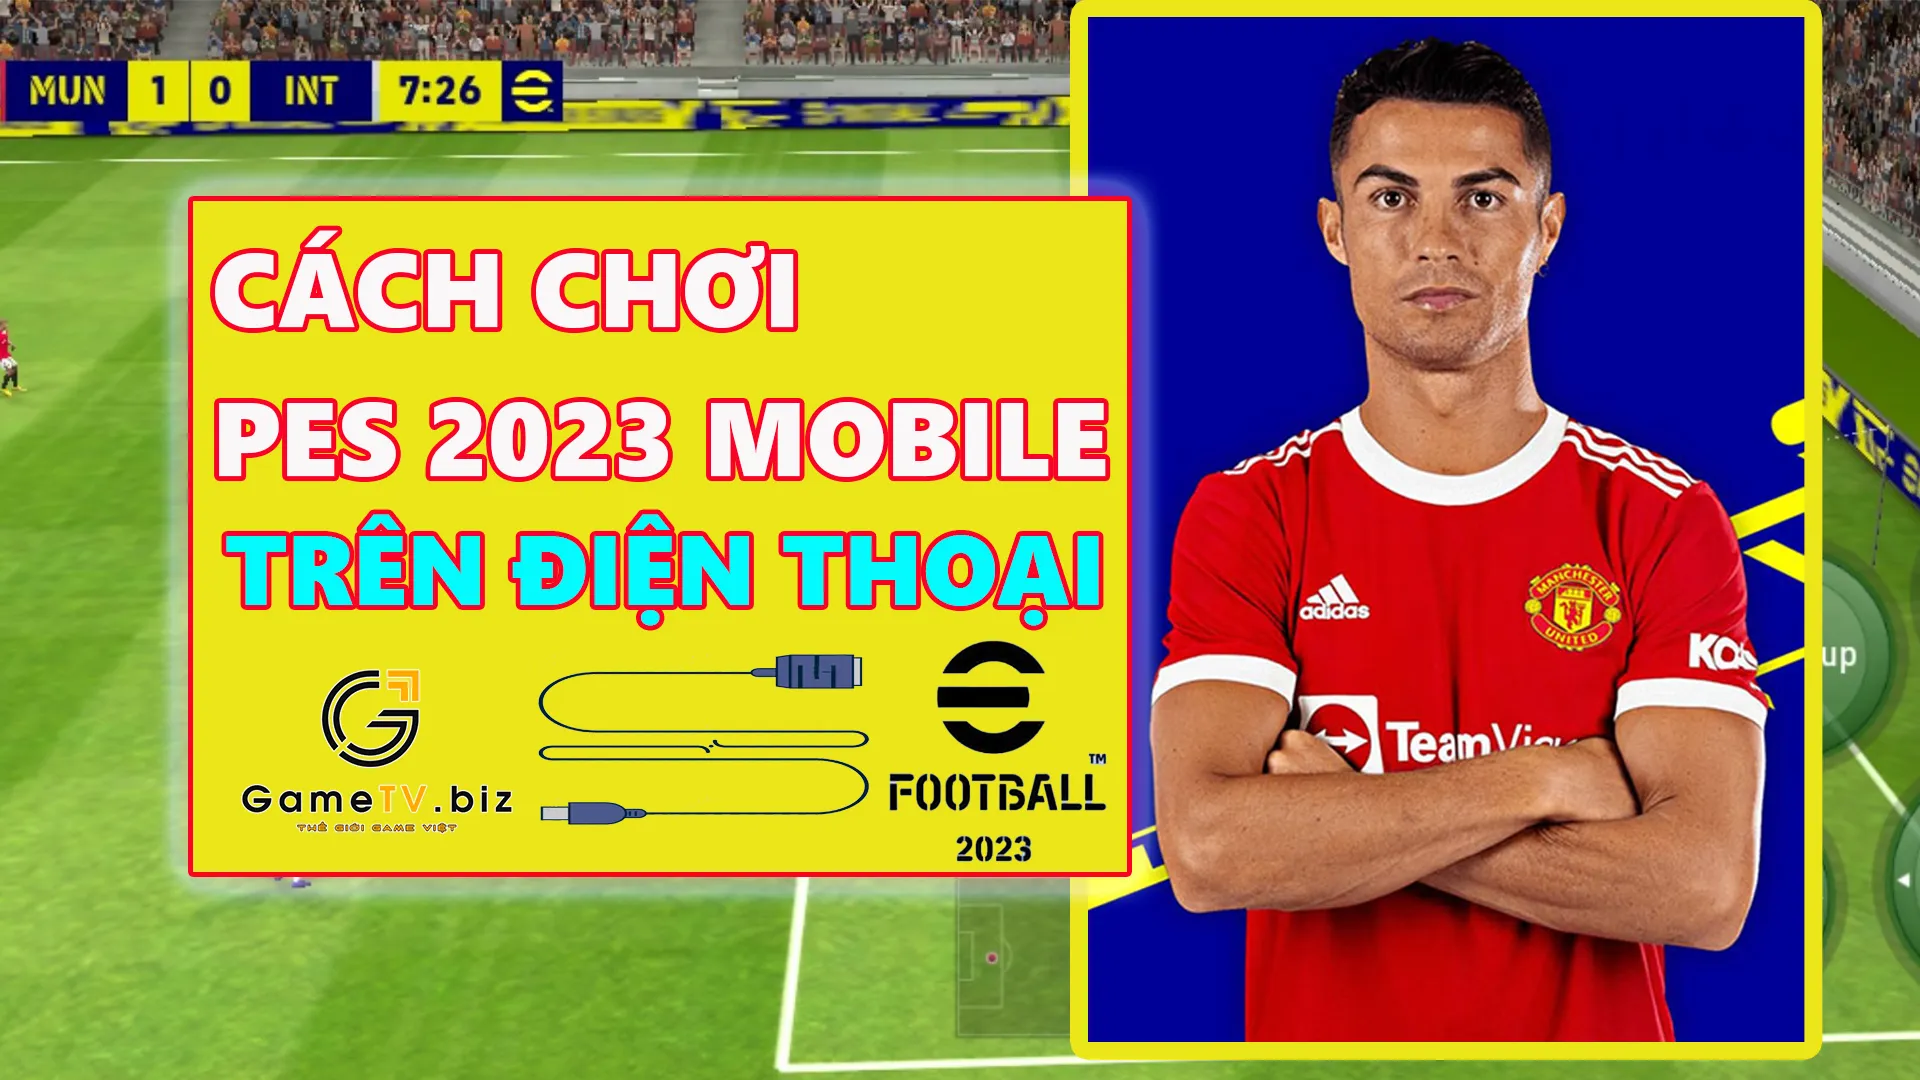 cach choi PES 2023 mobile tren dien thoai